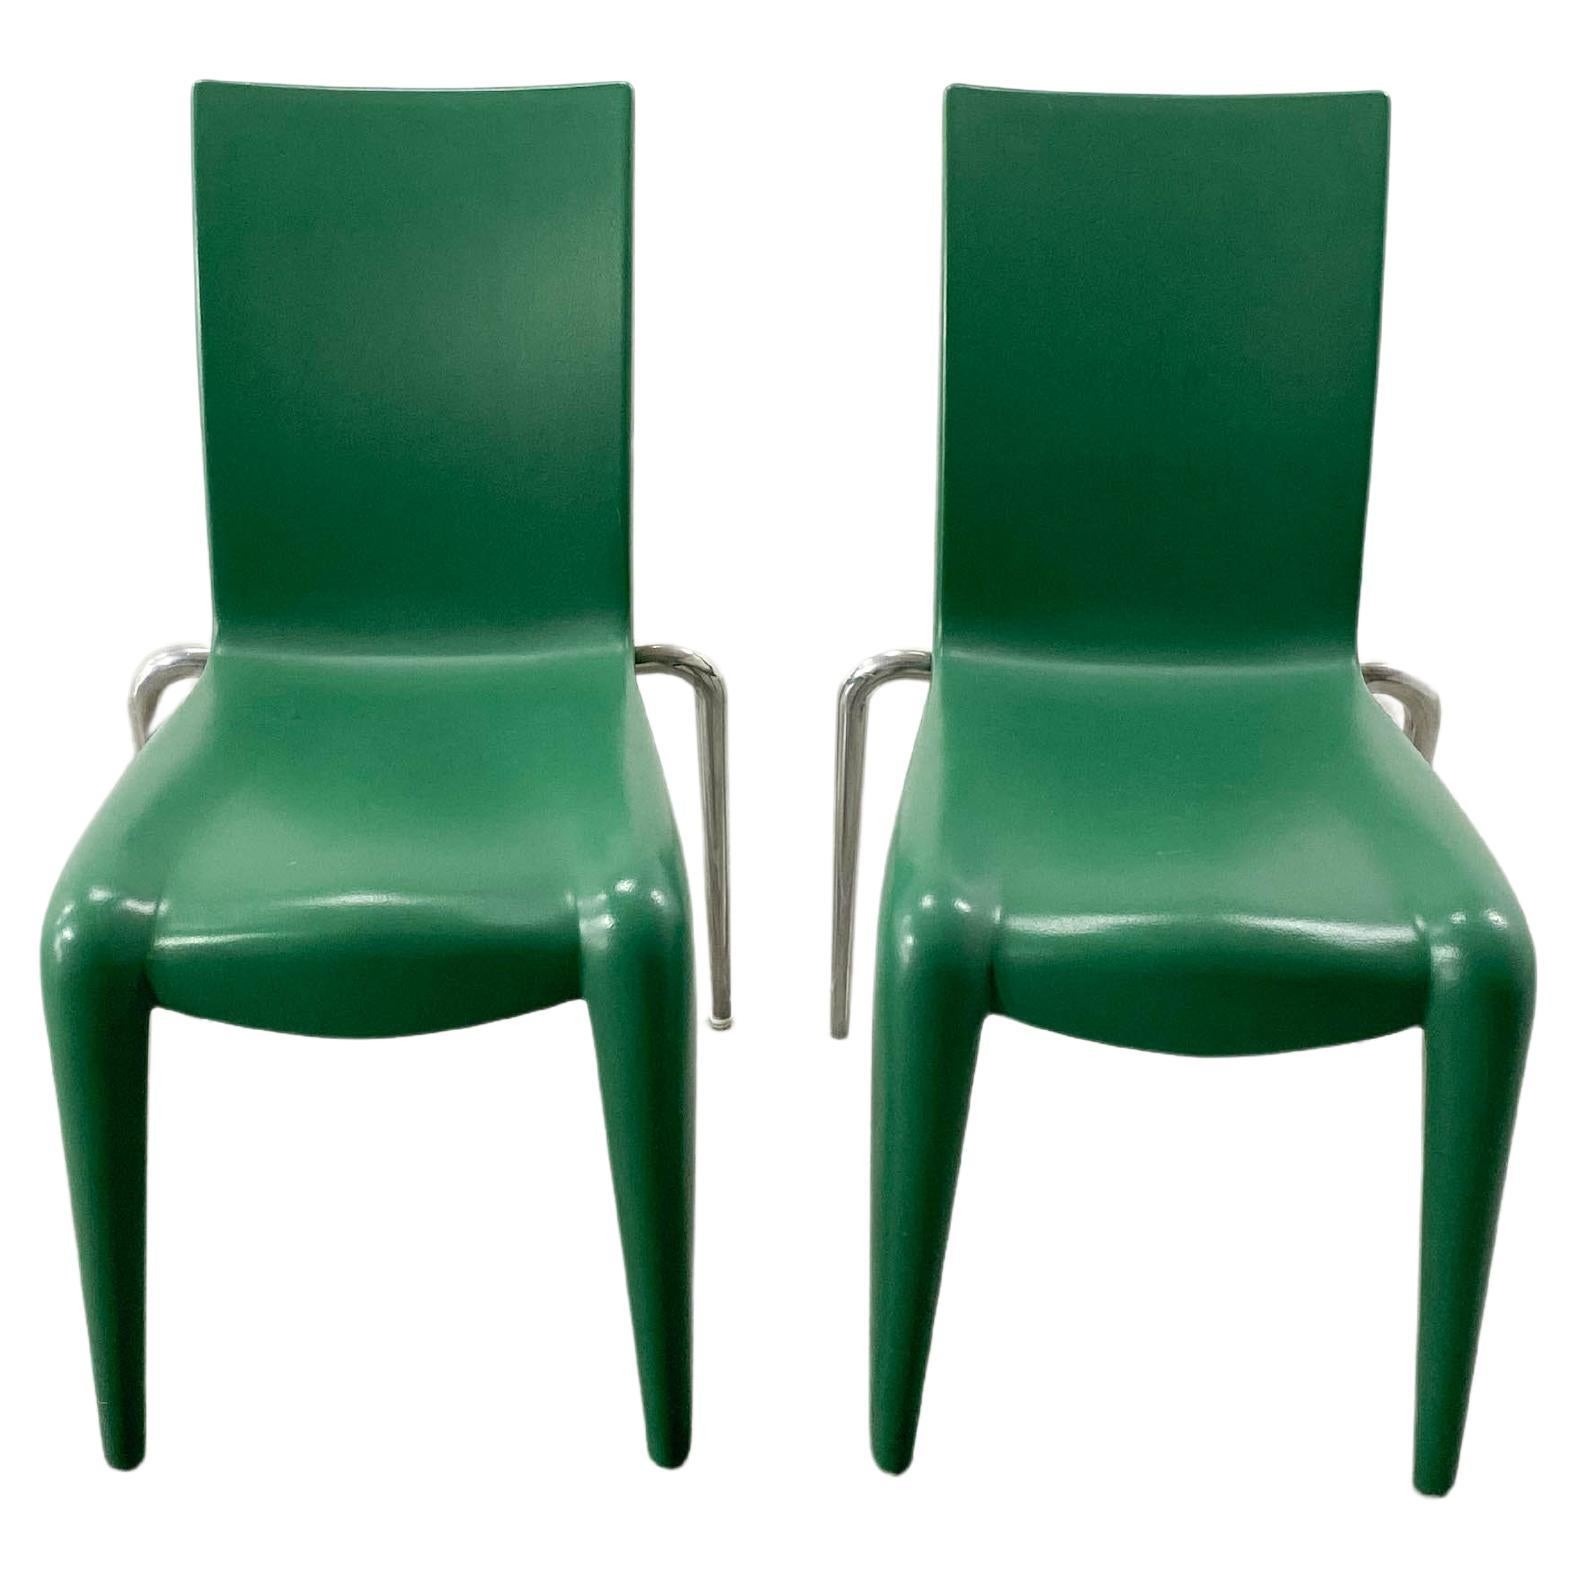 Vintage-Stühle Louis XX von Philippe Starck für Vitra, Louis XX, 1990er Jahre, 2er-Set, Vintage